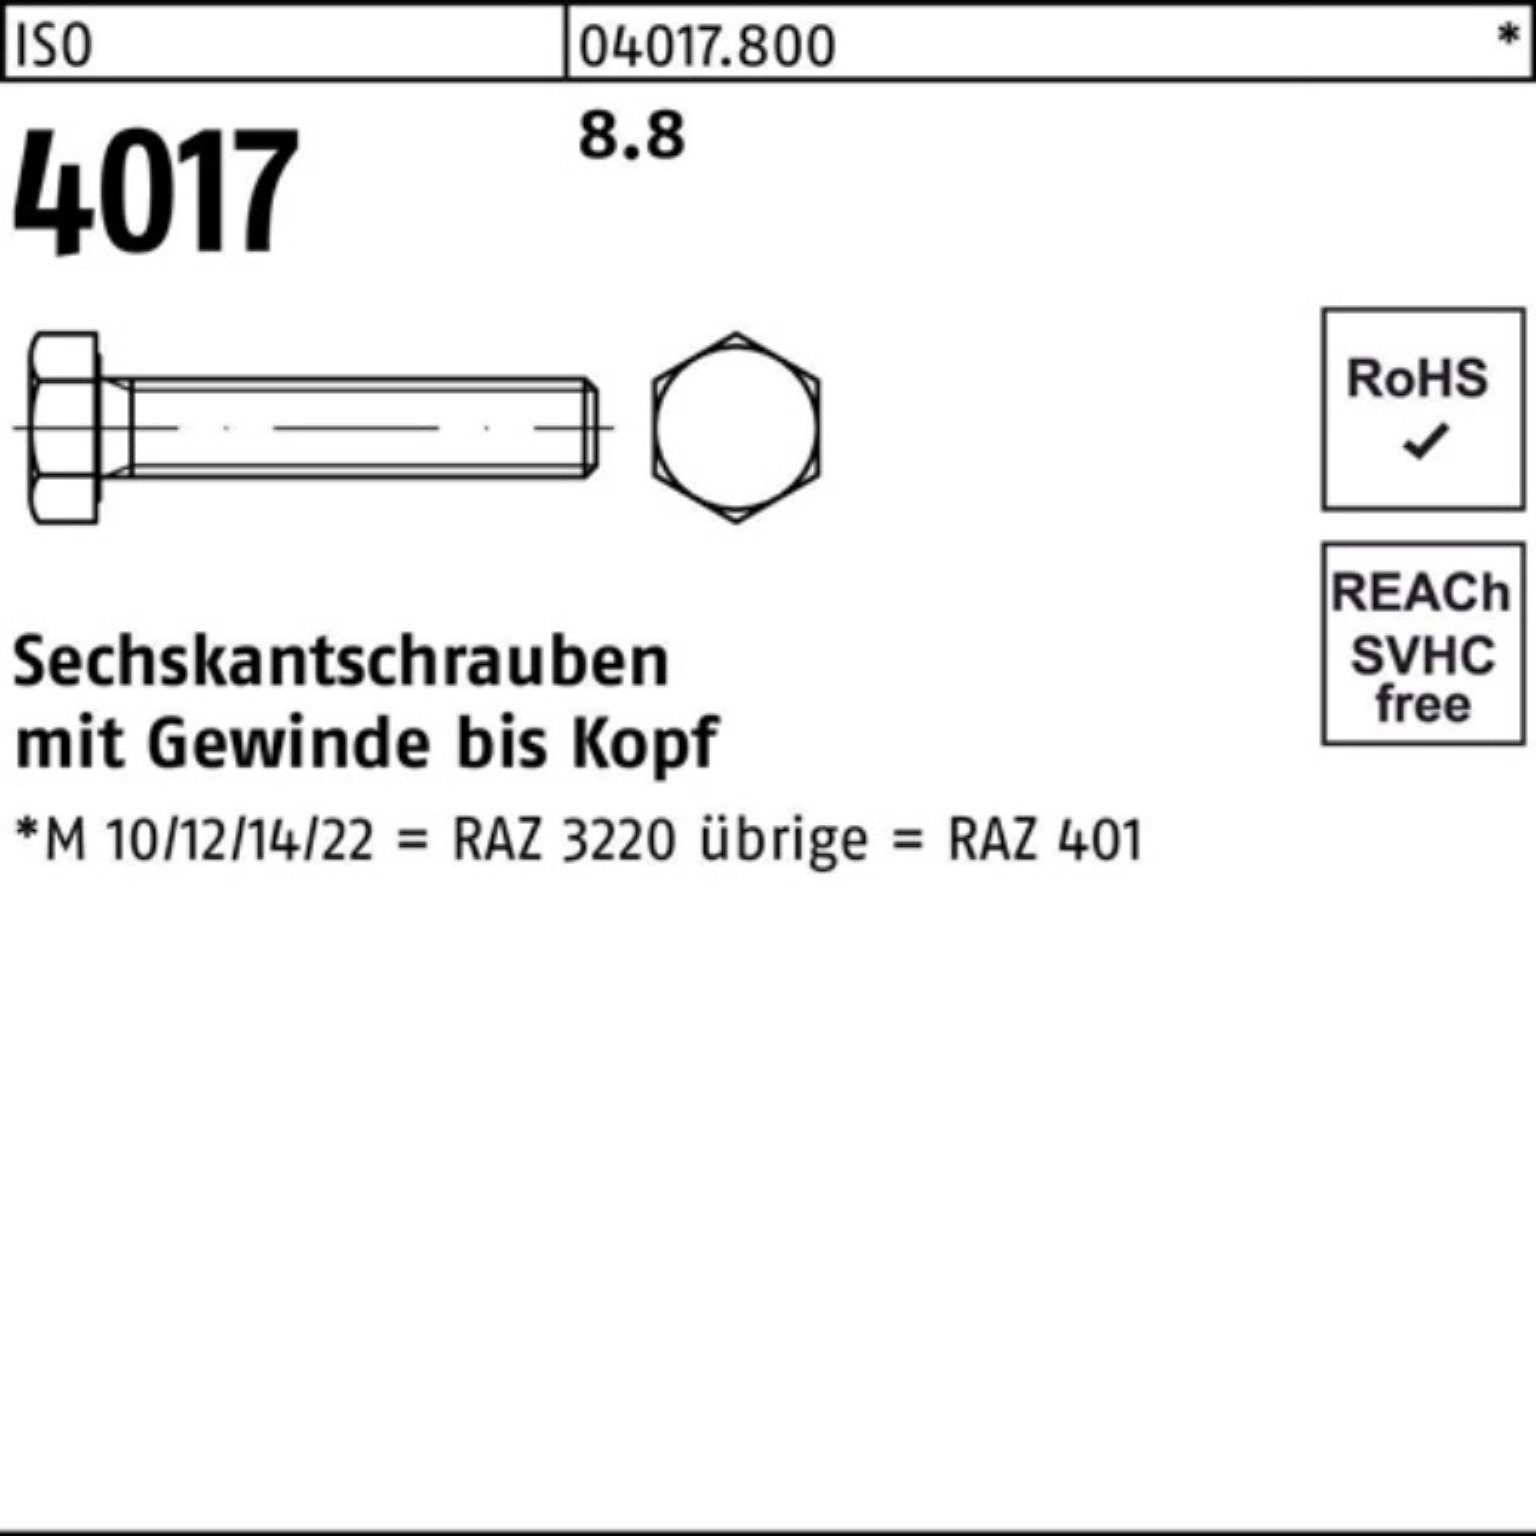 Bufab Sechskantschraube M3x 100er Sechskantschraube 4017 VG 401 100 8.8 Stück ISO ISO Pack 12